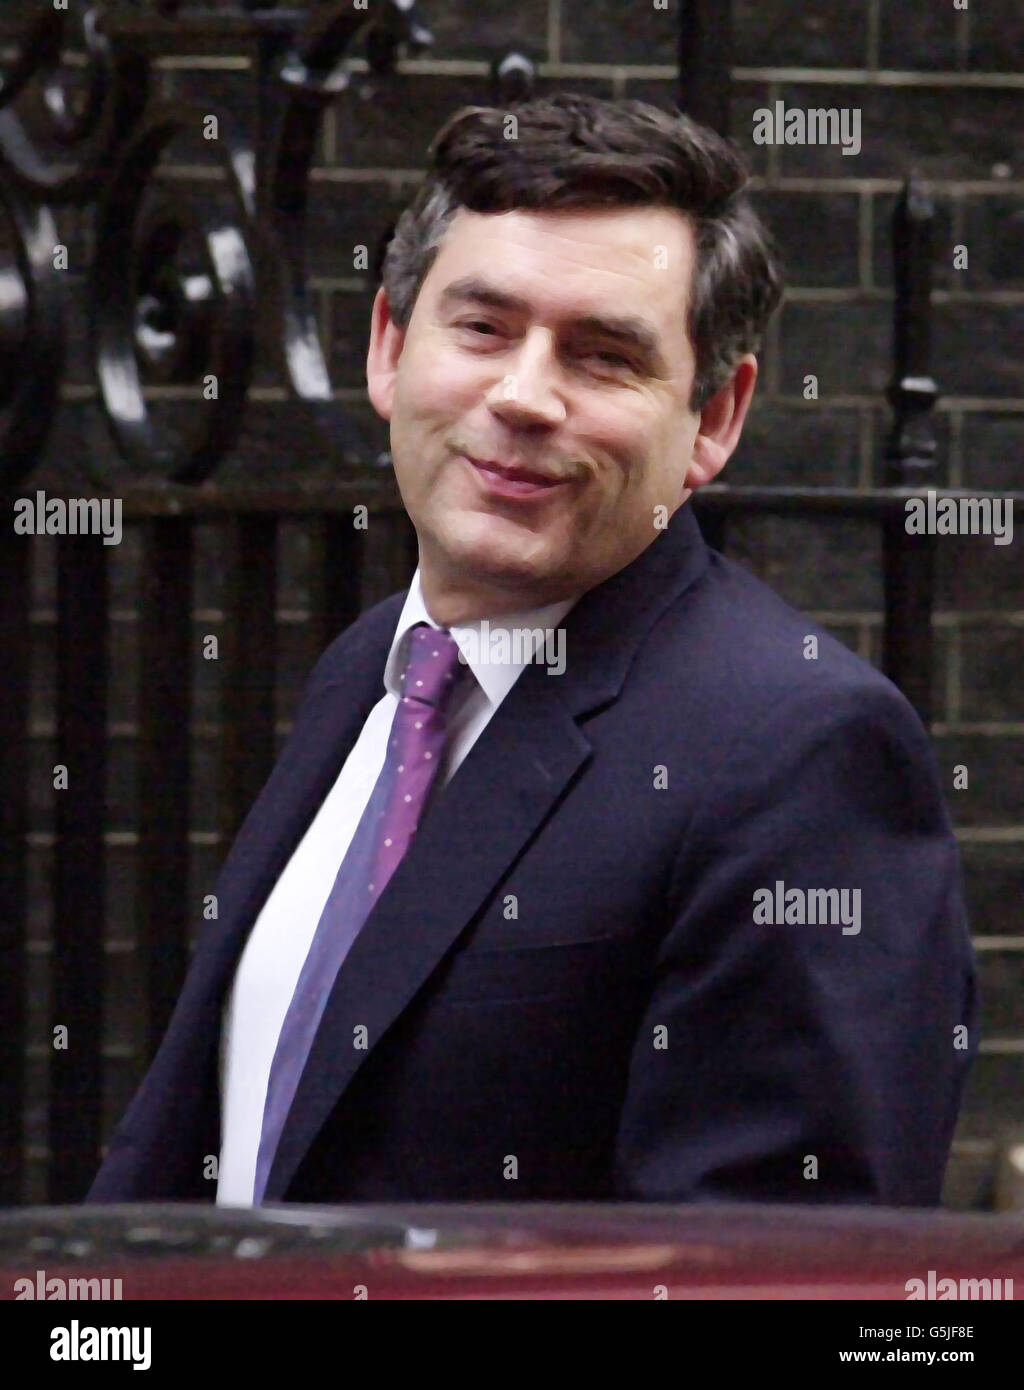 Bundeskanzler Gordon Brown kommt am Tag der Rede vor dem Haushaltsplan zur Kabinettssitzung in Downing St, London, an. Der Luft- und Raumfahrtgigant BAE Systems kündigte an, aufgrund der Verlangsamung nach den Terroranschlägen vom 11. September 1700 Arbeitsplätze zu kürzen. Stockfoto